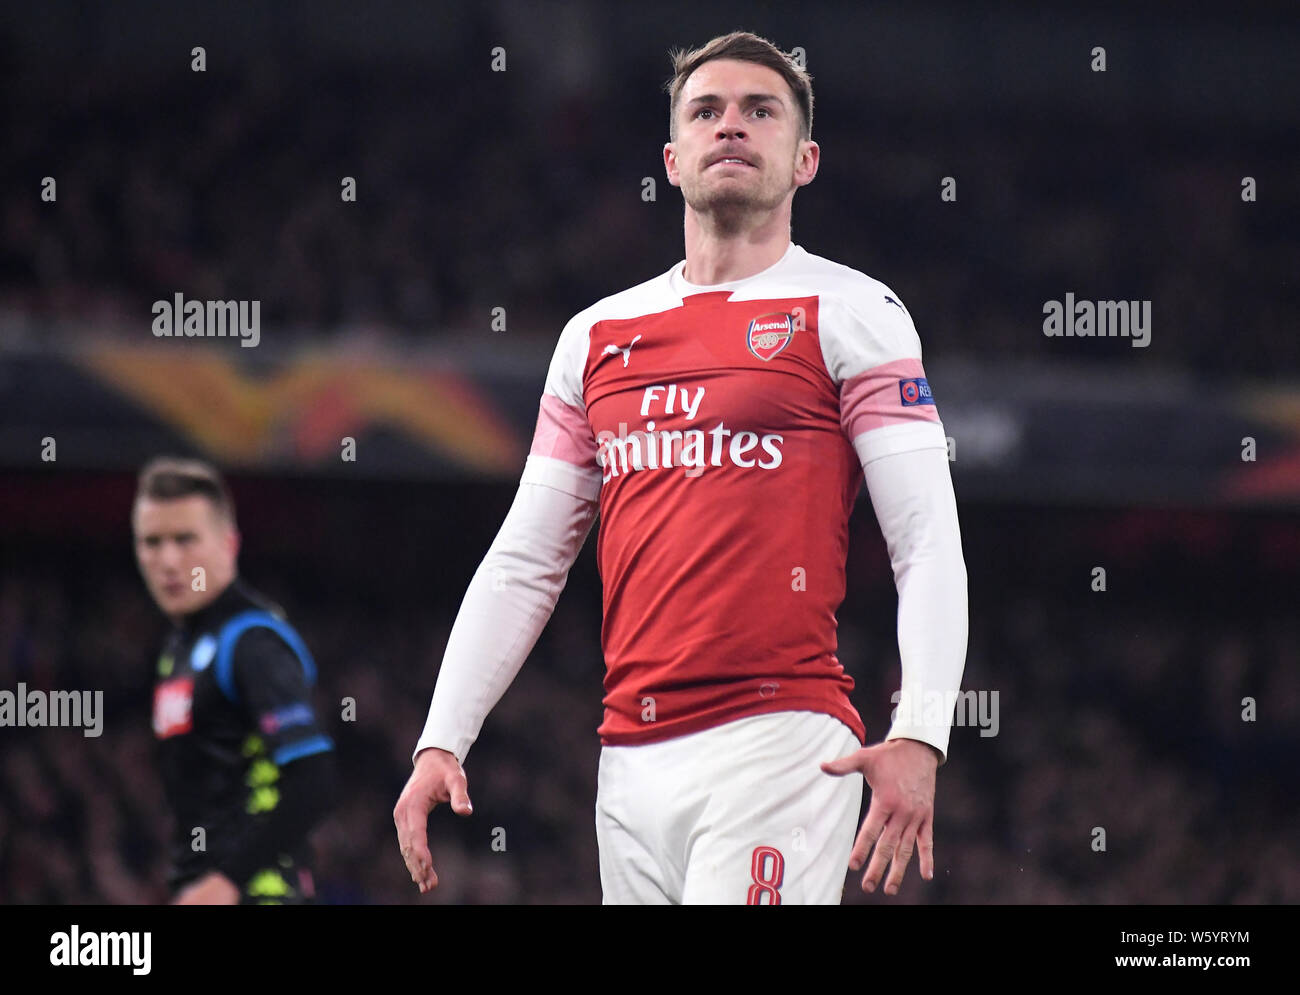 Londra, Inghilterra - 11 Aprile 2019: Aaron Ramsey di Arsenal nella foto durante la prima tappa del 2018/19 UEFA Europa League quarti di finale partita tra Arsenal FC (Inghilterra) e SSC Napoli (Italia) all'Emirates Stadium. Foto Stock